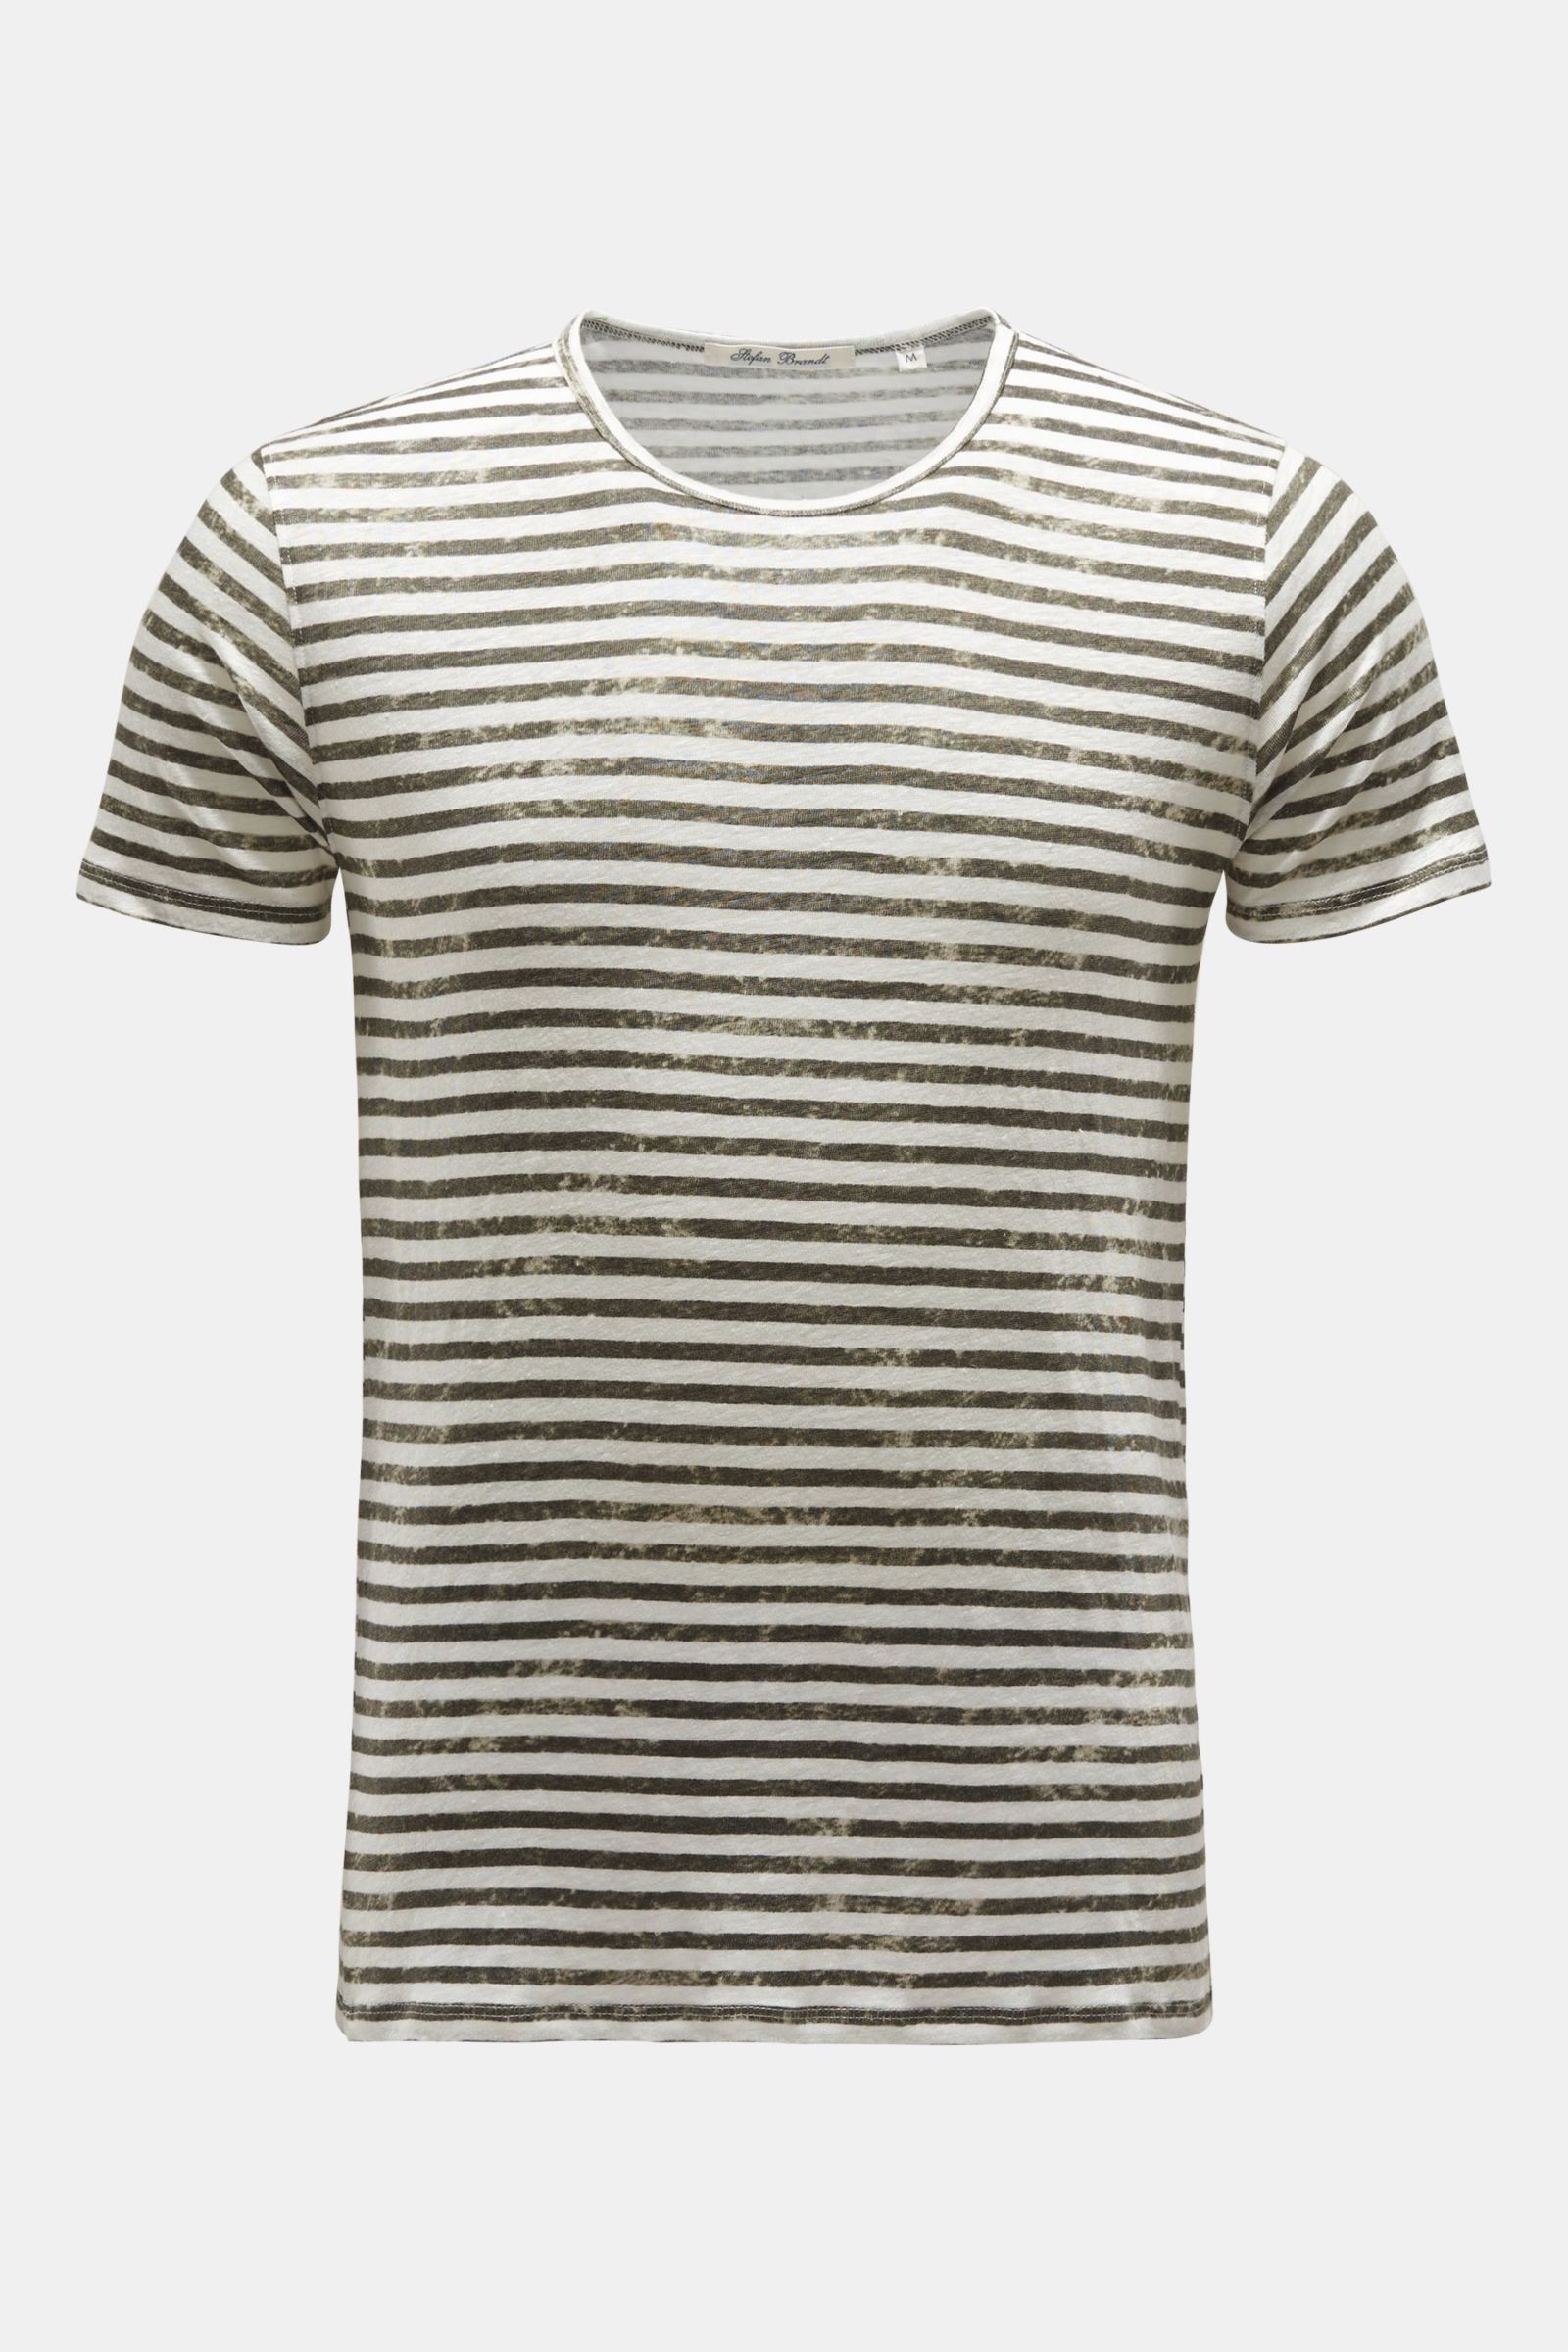 Leinen Rundhals-T-Shirt oliv/offwhite gestreift